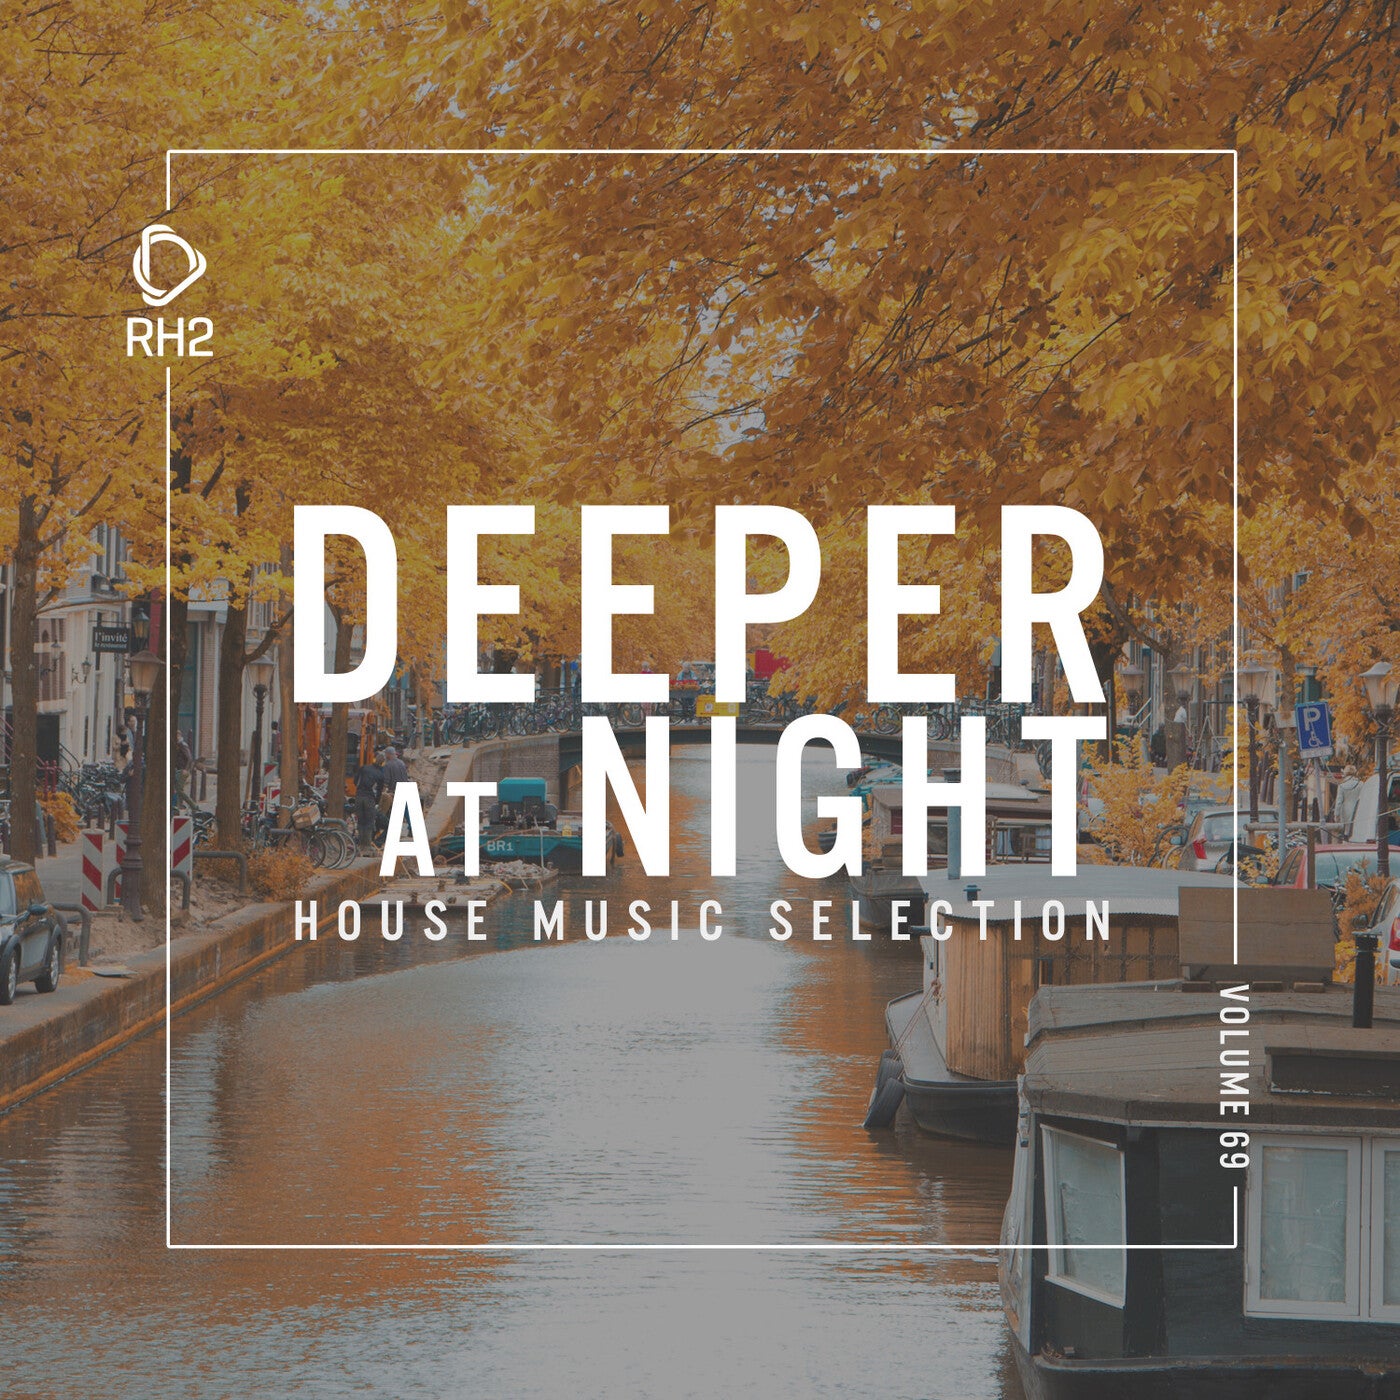 Deeper At Night Vol. 69